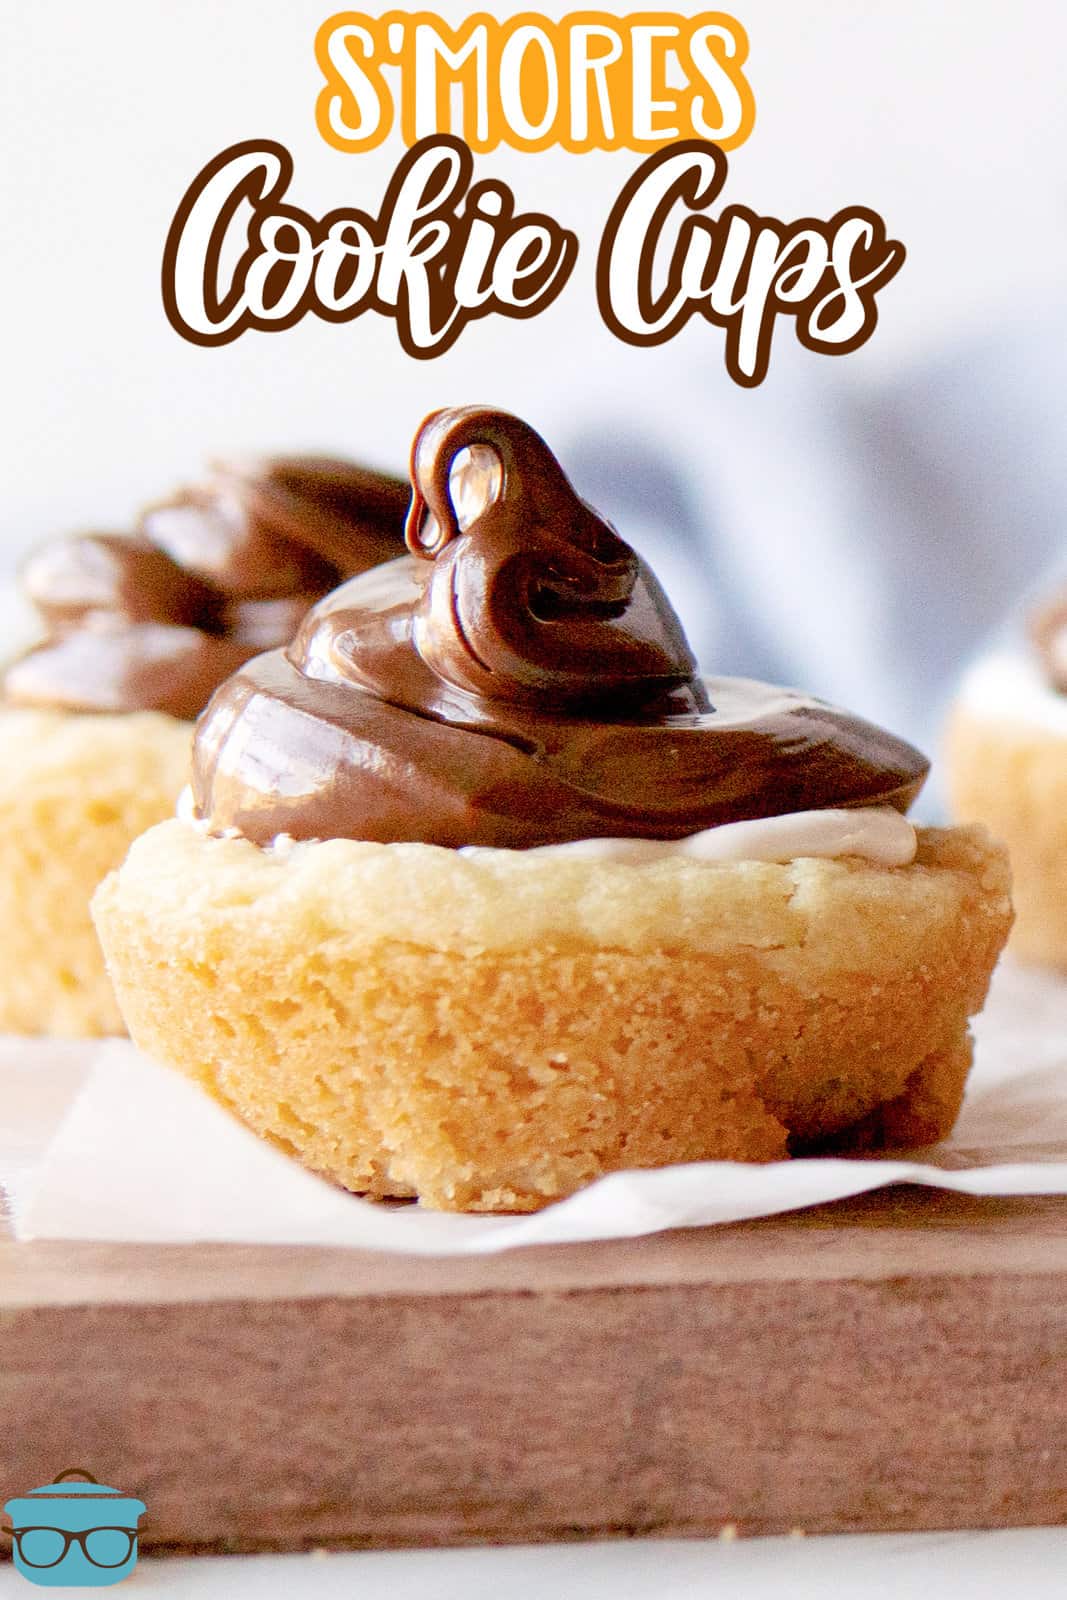 Immagine Pinterest primo piano di S'mores Cookie Cups che mostra la nutella in cima.